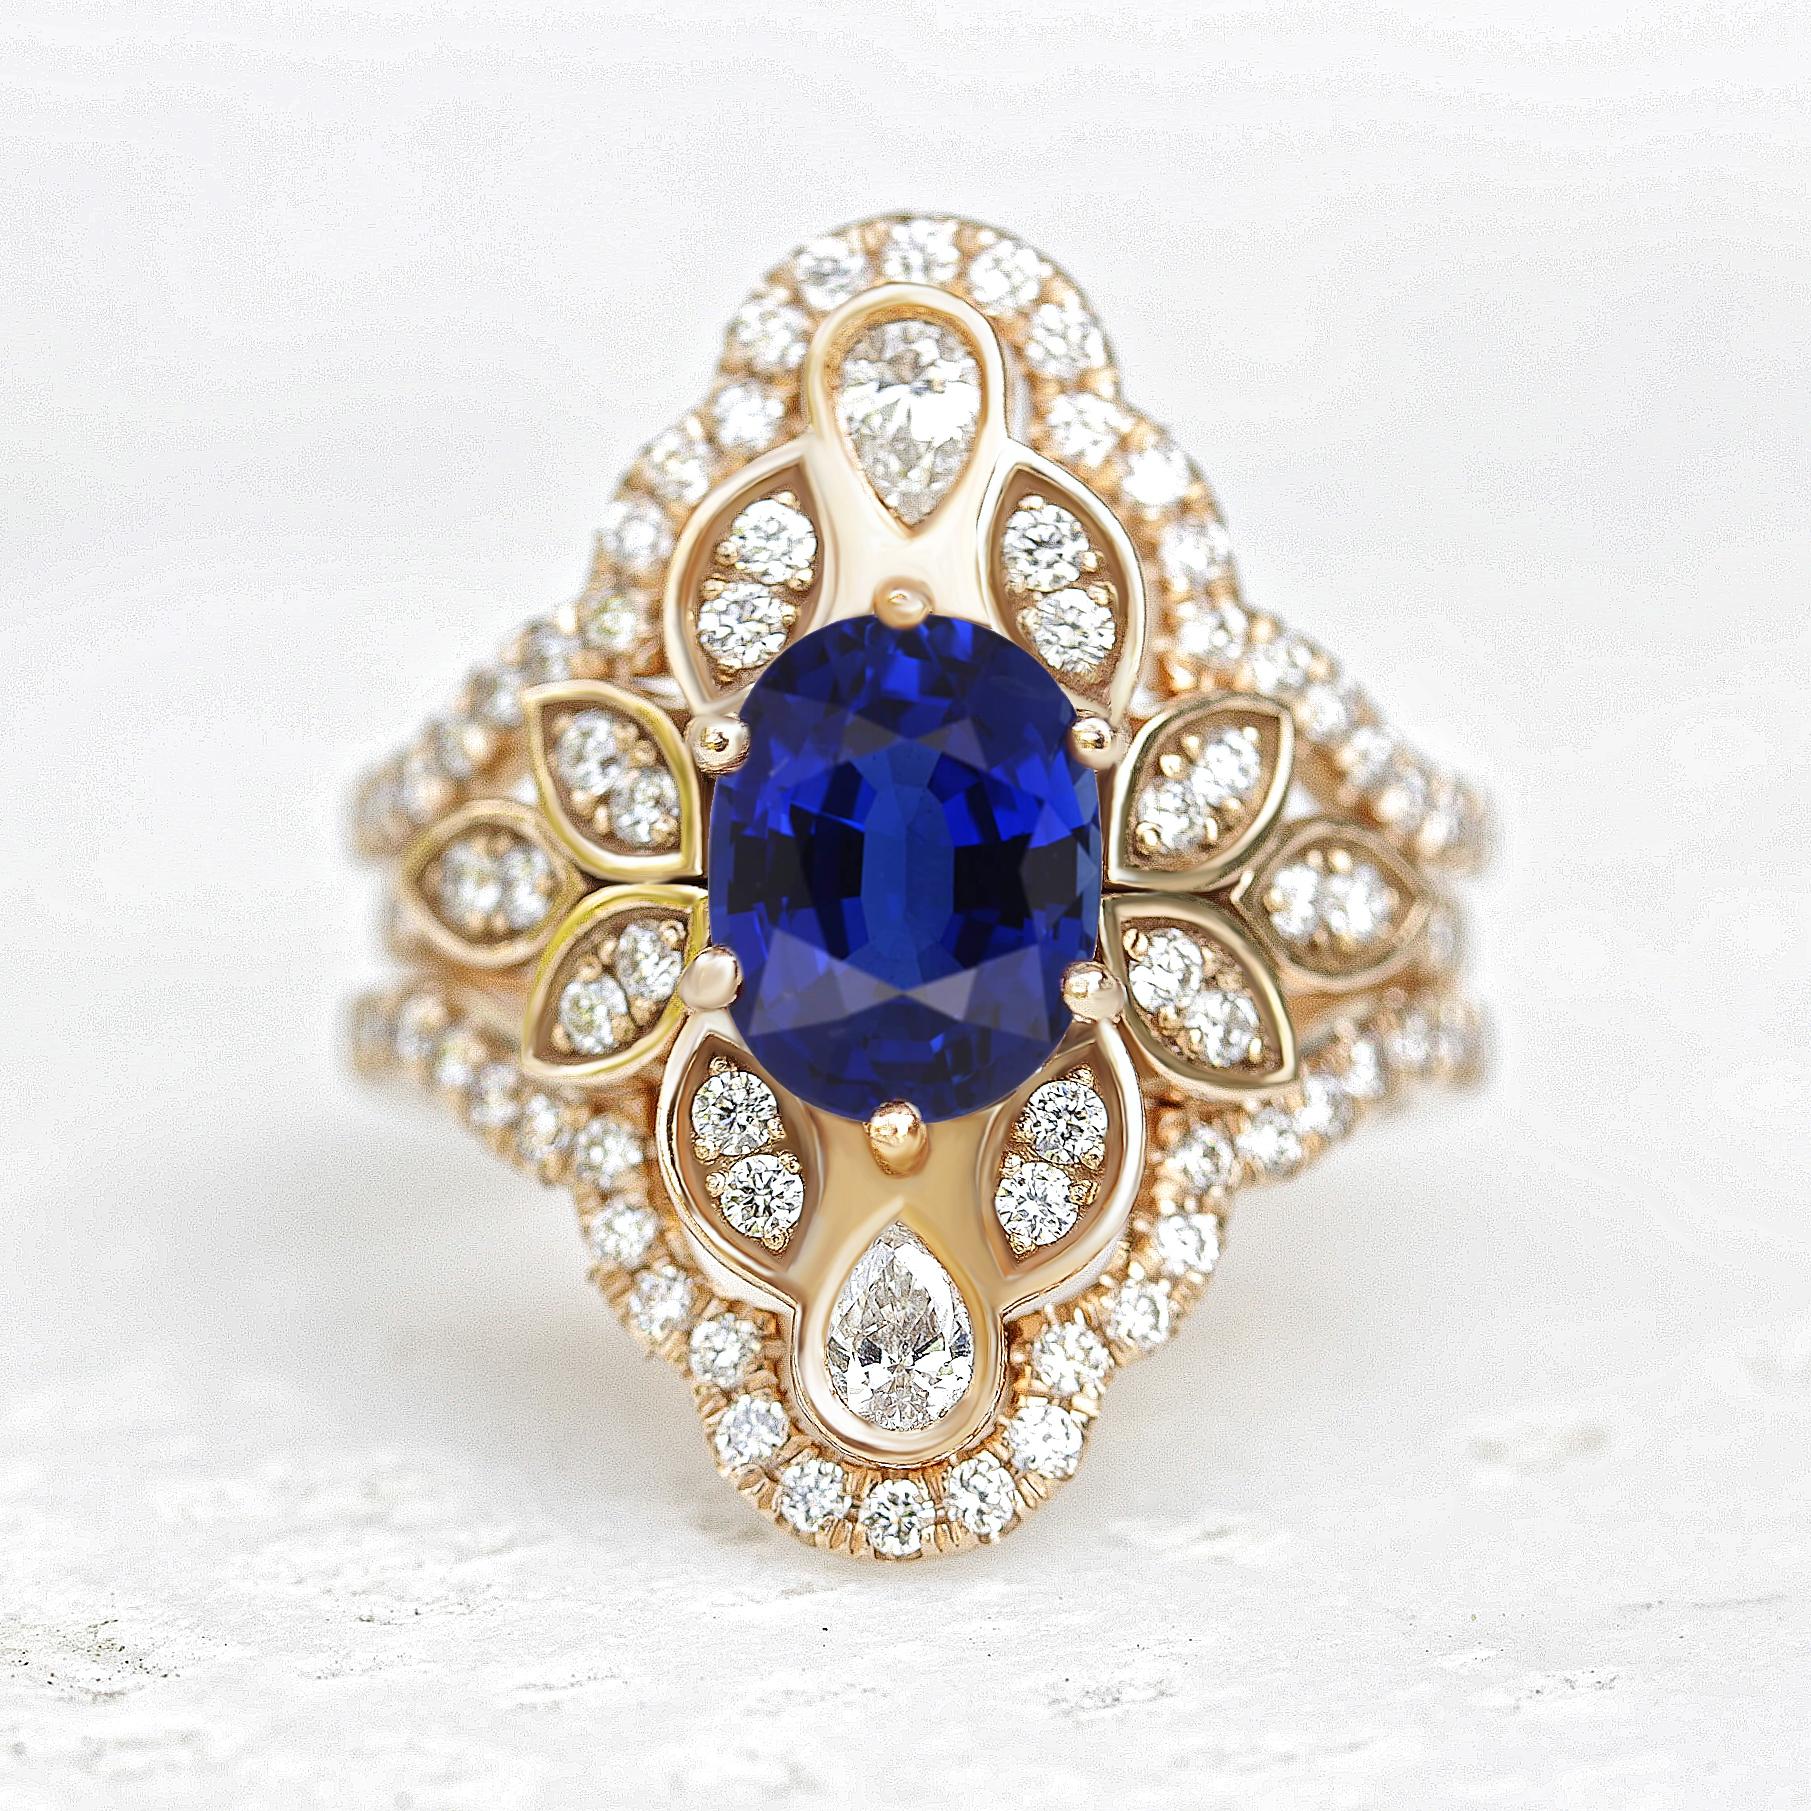 Dieser Verlobungsring besticht durch einen ovalen blauen Saphir - den traditionellen Geburtsstein des Monats September - in der Mitte, der mit Jugendstil-Blattornamenten und zwei birnenförmigen Diamanten verziert ist. Dieser königliche